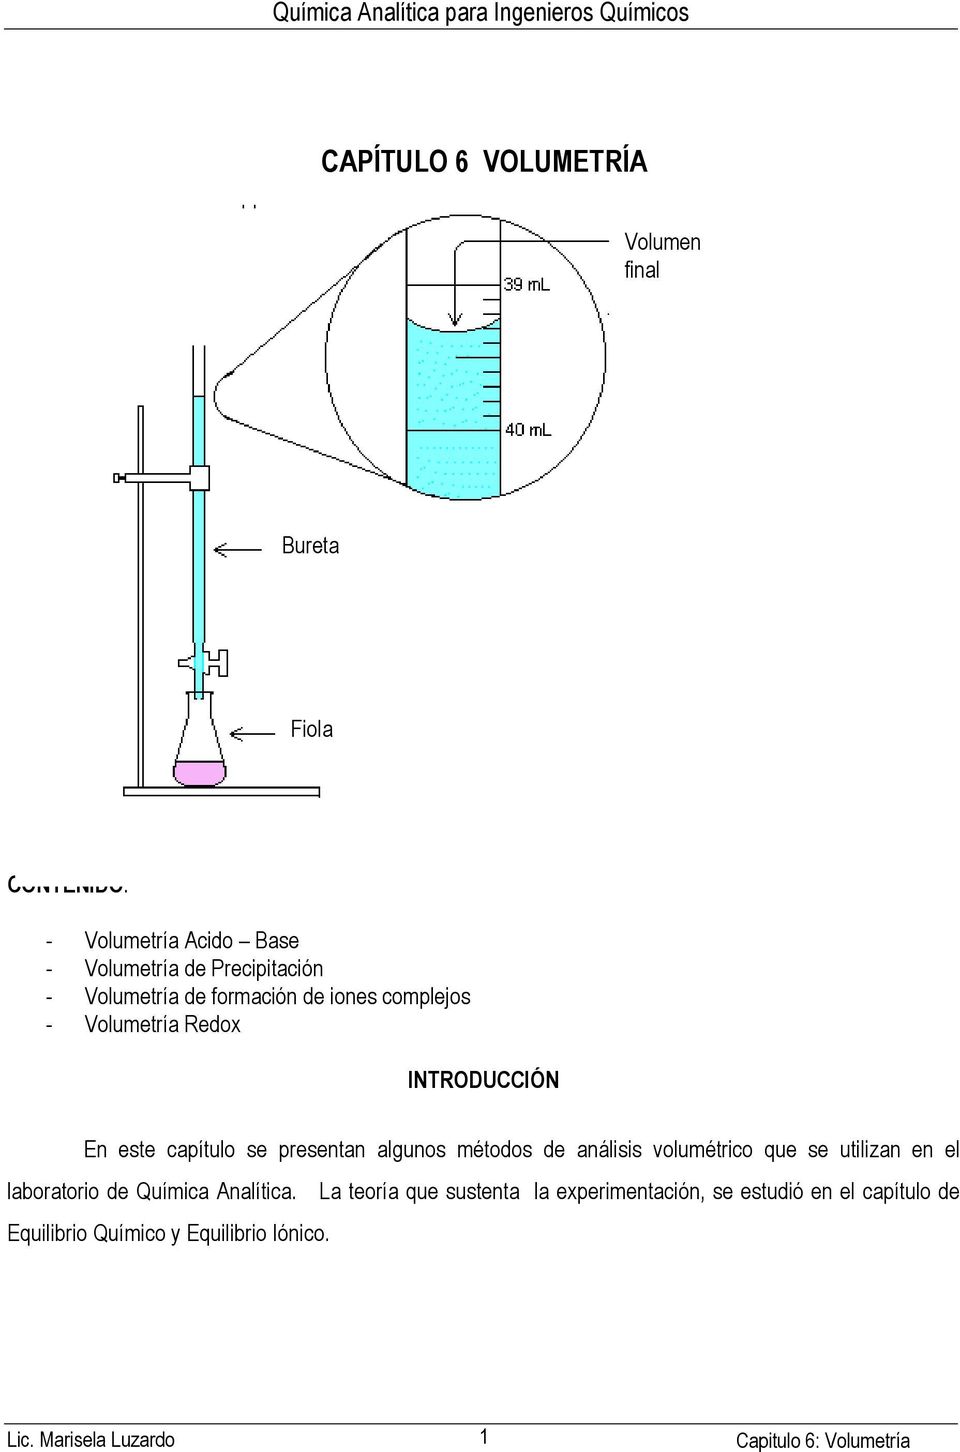 algunos métodos de análisis volumétrico que se utilizan en el laboratorio de Química Analítica.